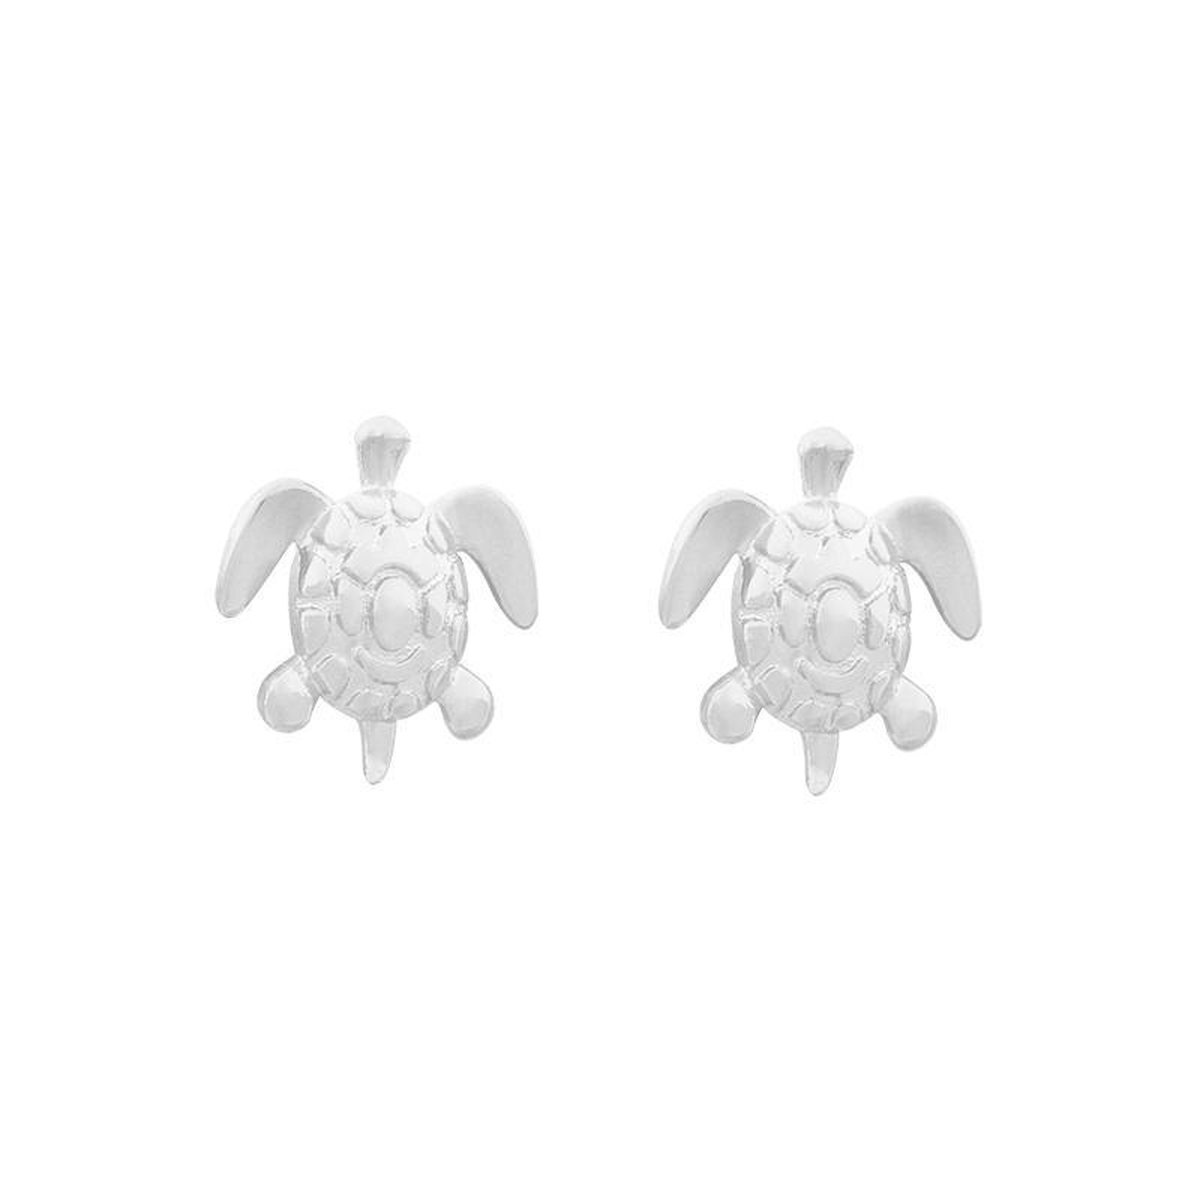 Schildpad oorbellen - zilveren oorbellen schildpad - schildpad oorbellen - gold plated - 925 zilver - zilveren sieraden - zilveren oorbellen studs - schildpadden - kerst cadeau - turtle - luckforyou